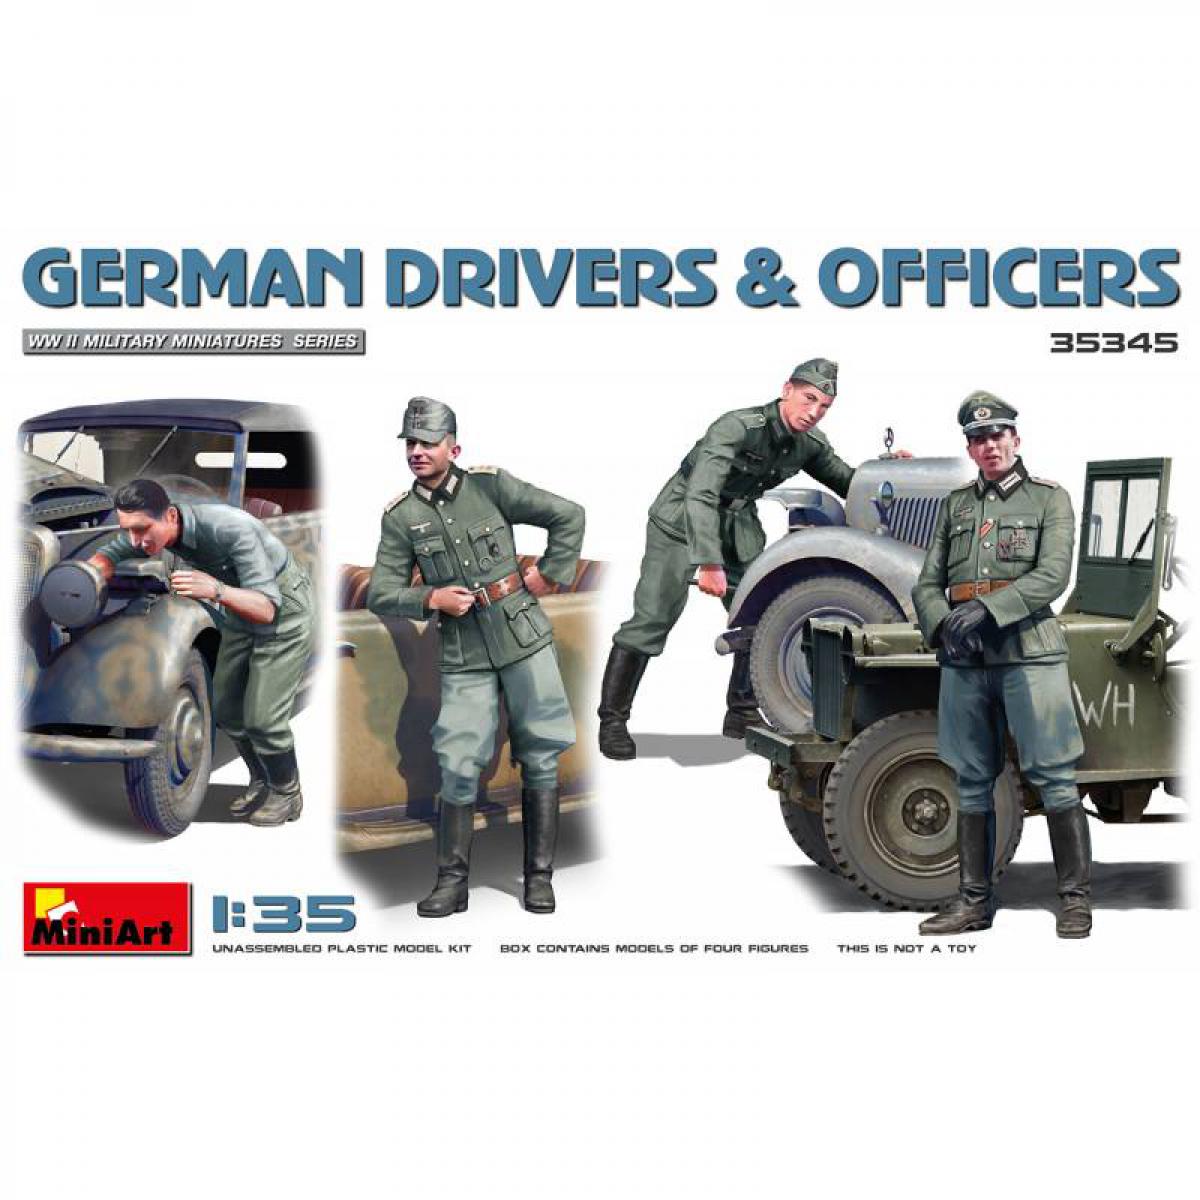 Mini Art - Figurine Mignature German Drivers & Officers - Figurines militaires